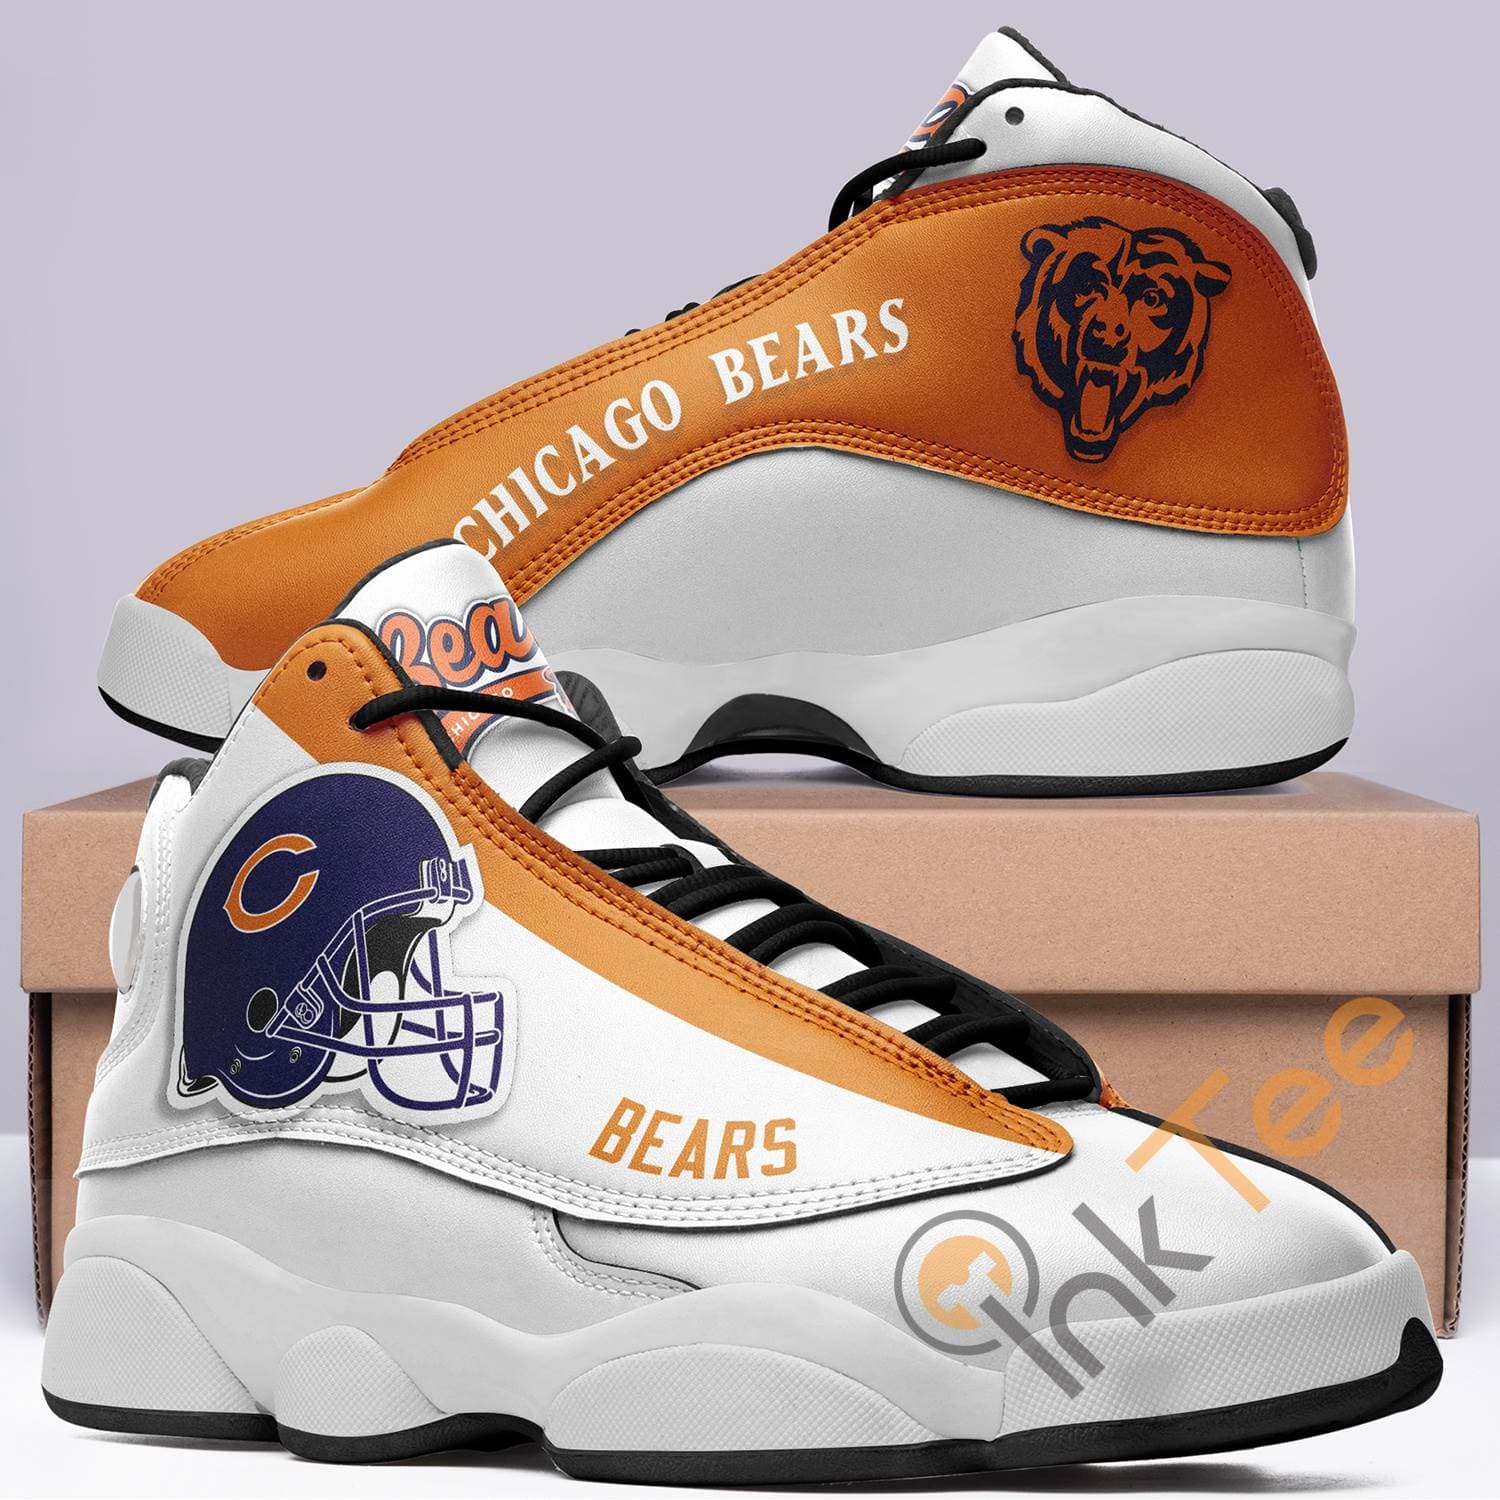 Chicago Bears Team Air Jordan Shoes